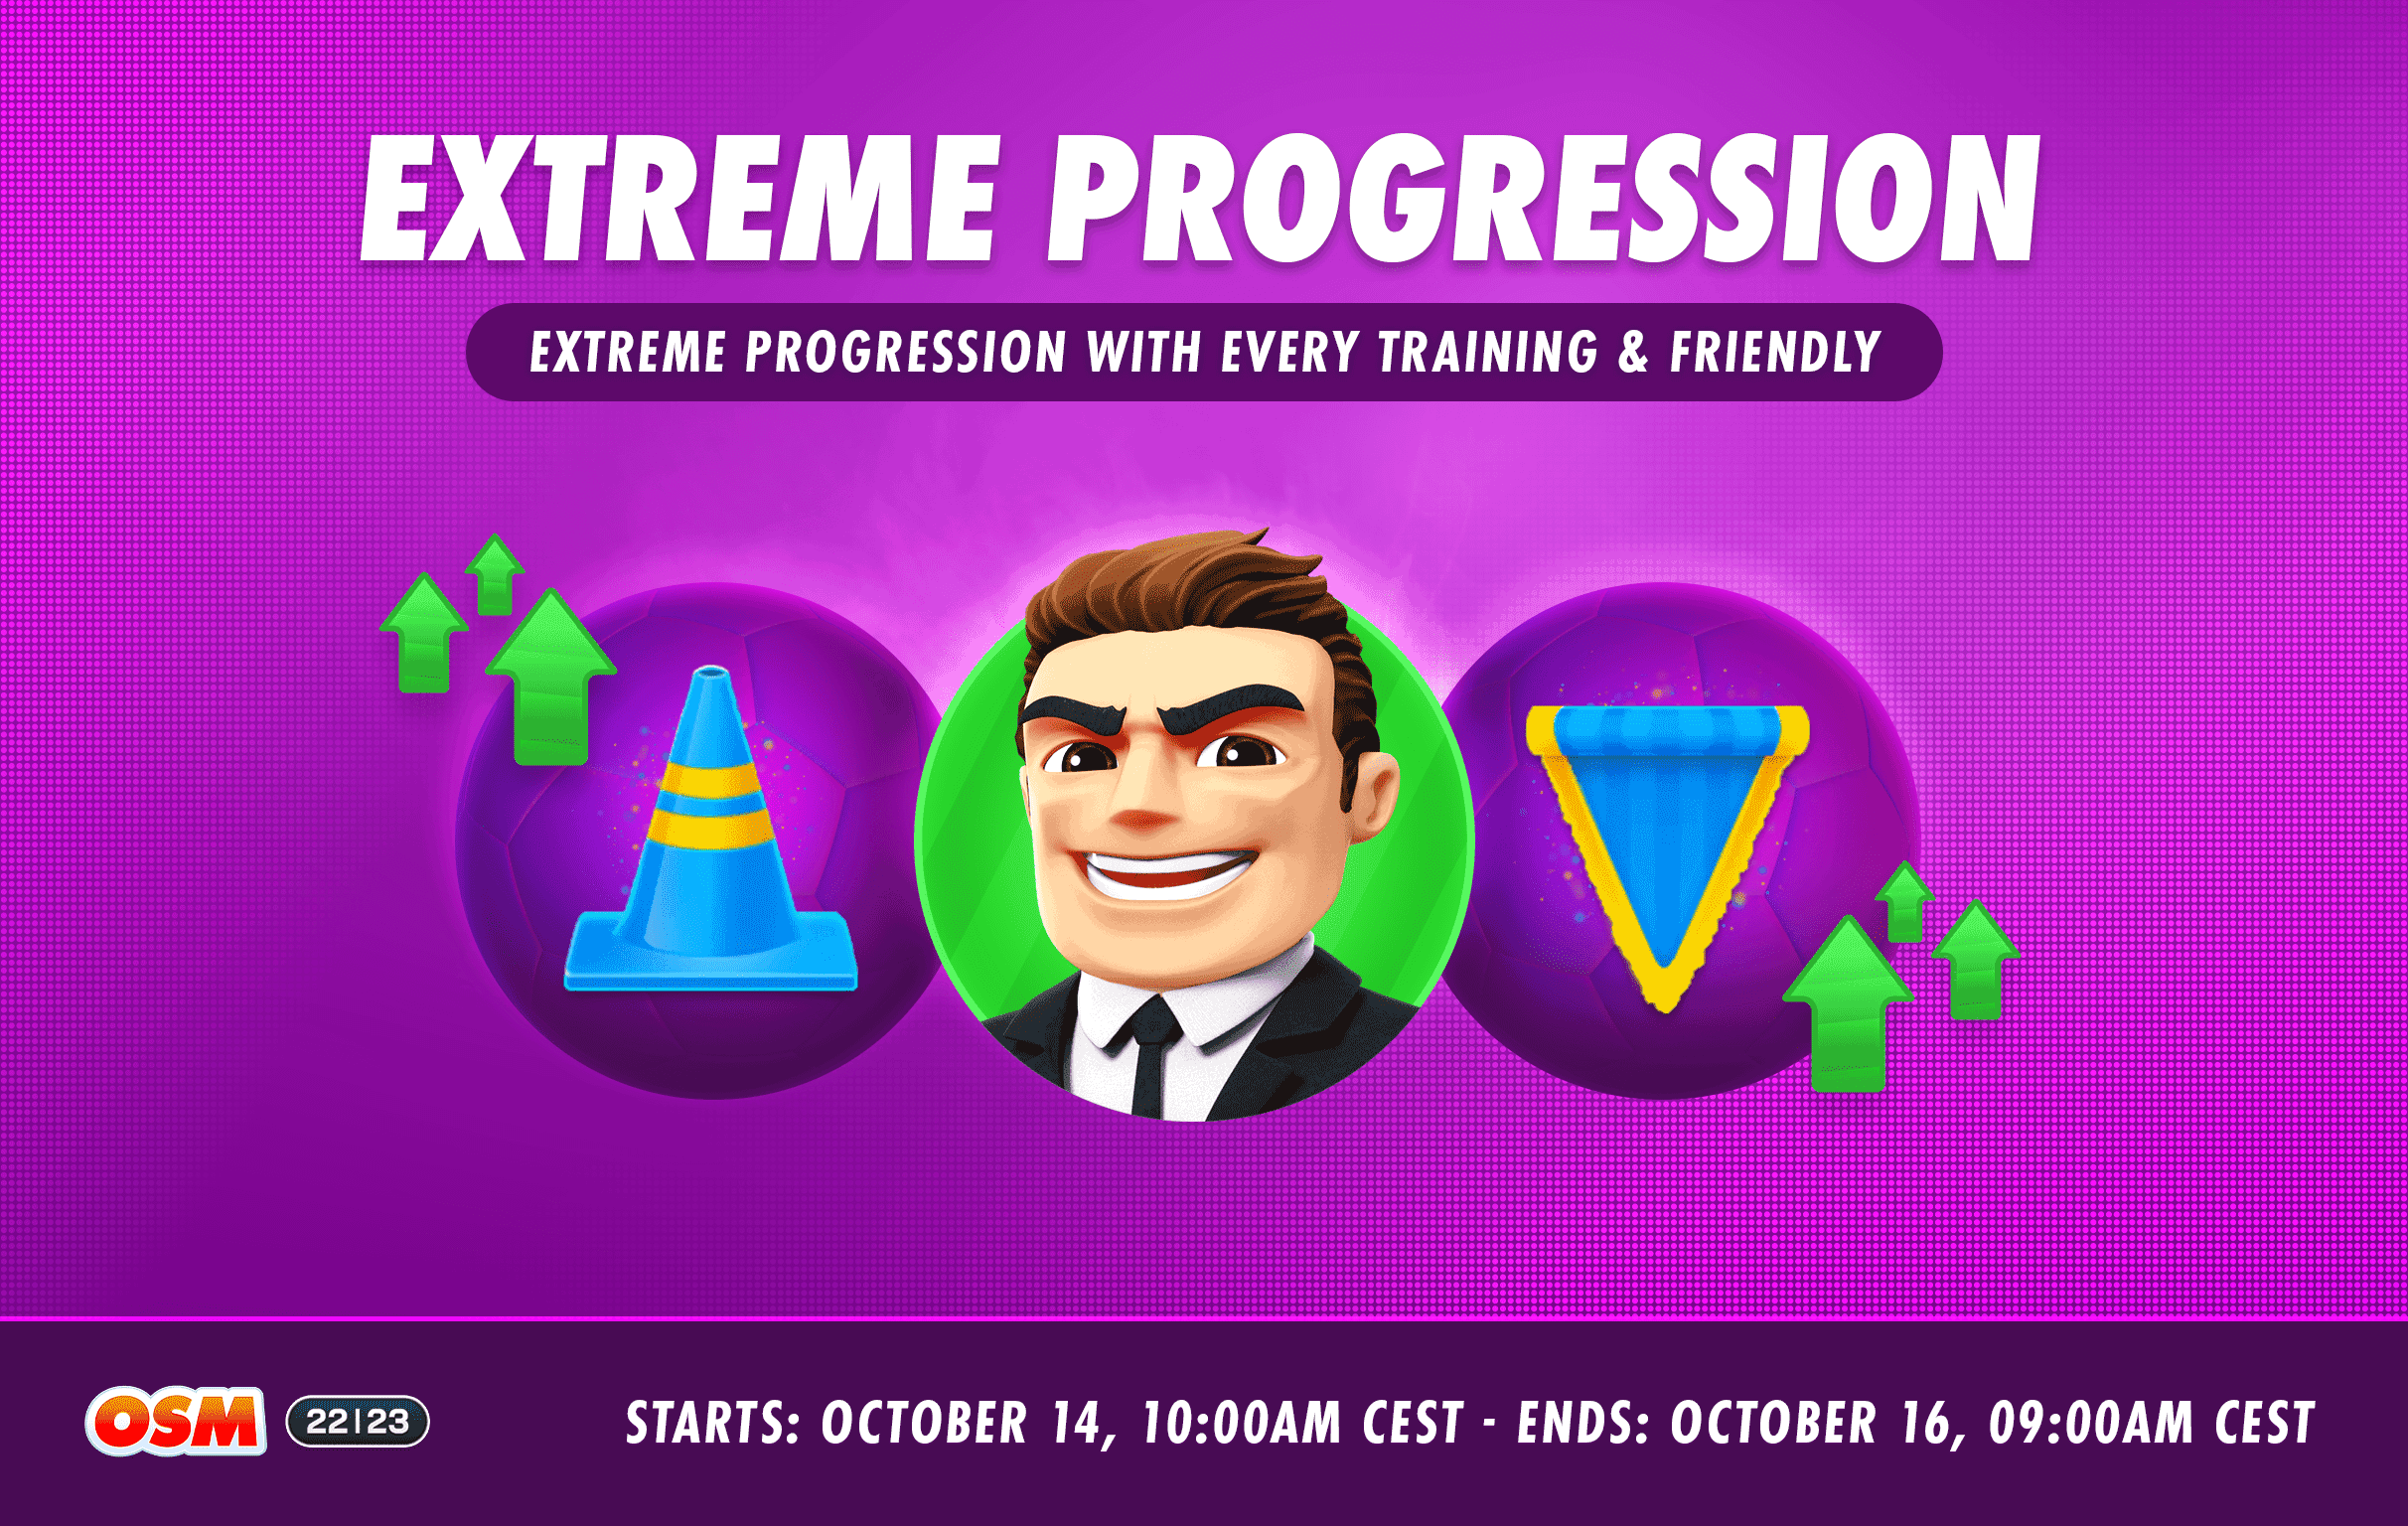 Forum_Extreme-Progression_REDDIT-min.png